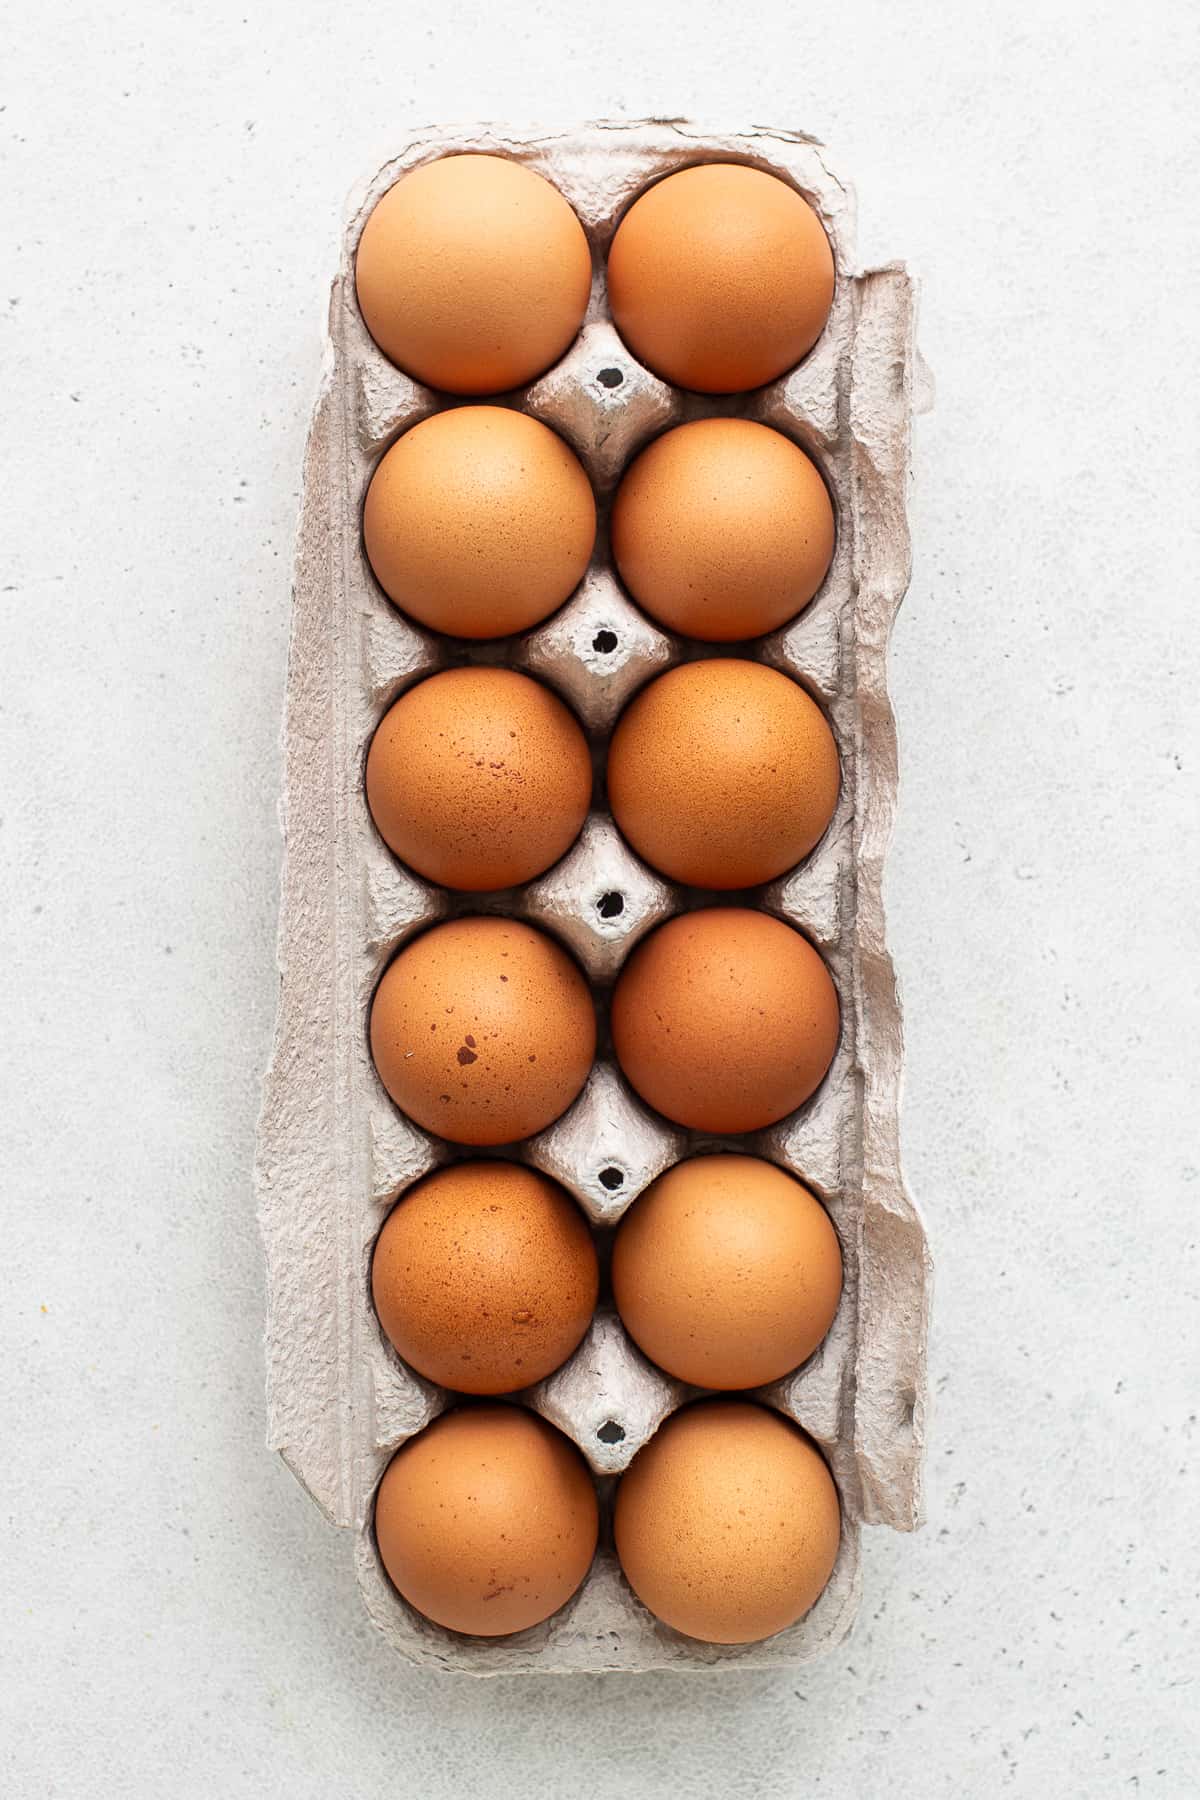 A dozen eggs in an egg carton.